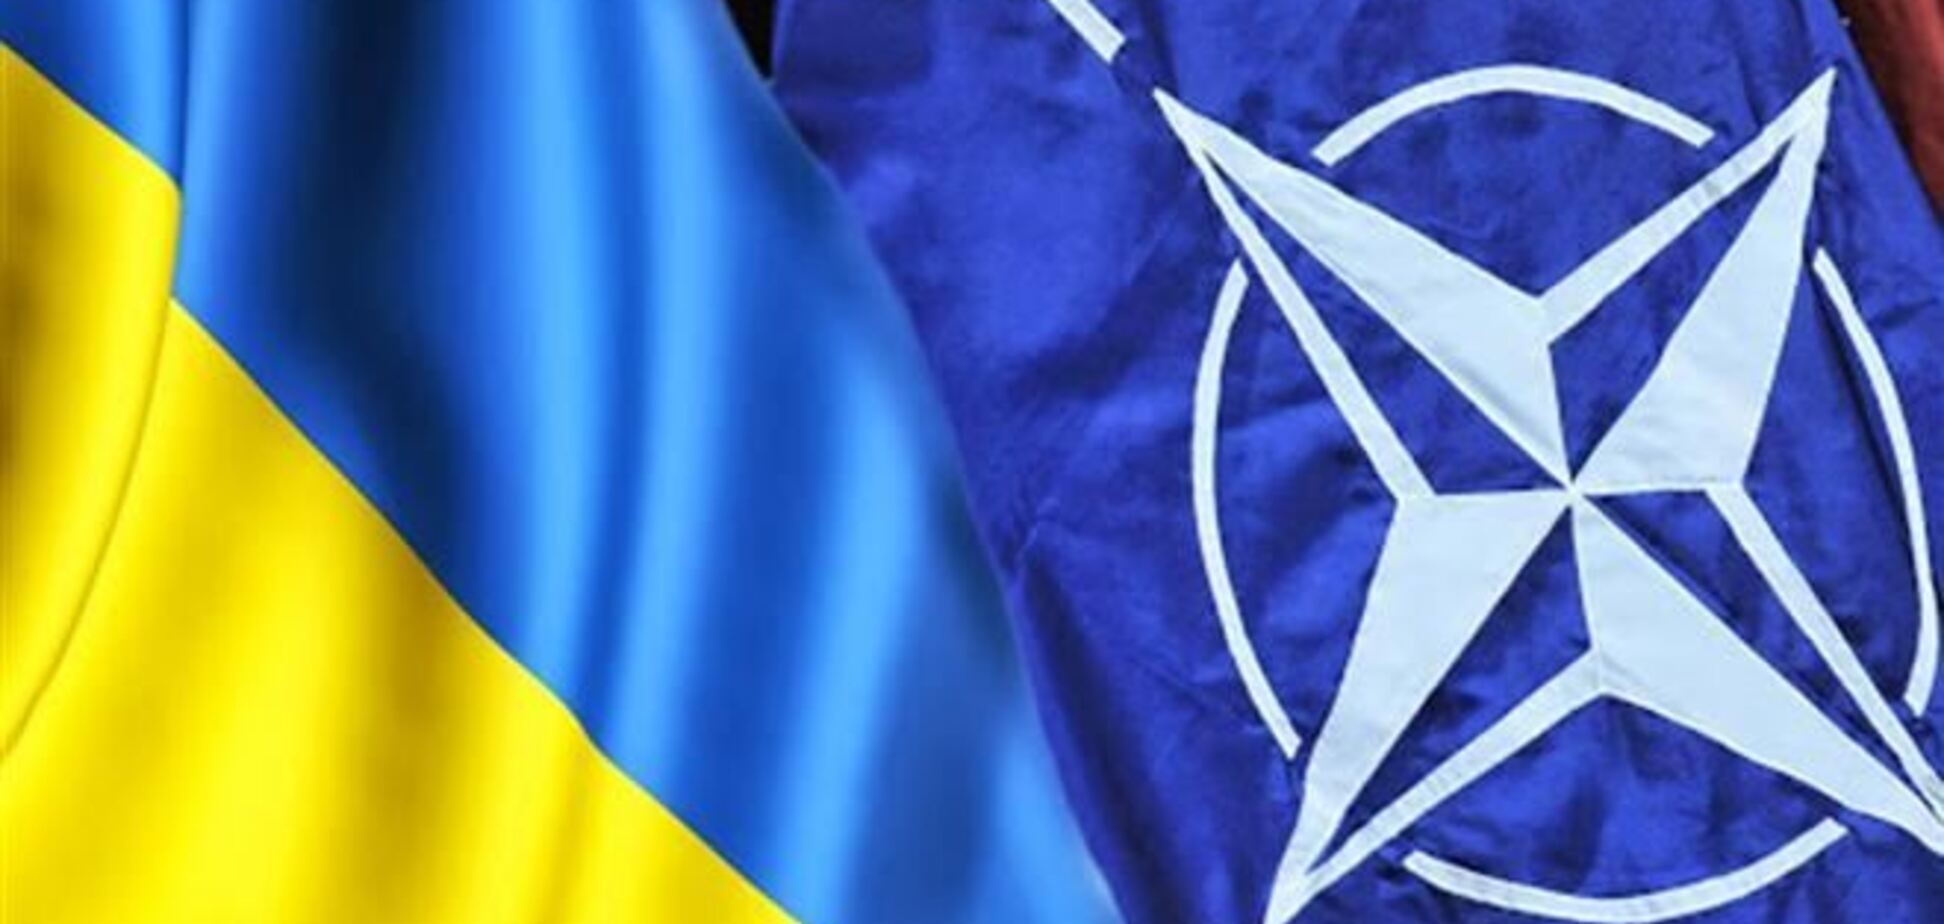 Рішення про приєднання України до НАТО прийме народ - МЗС